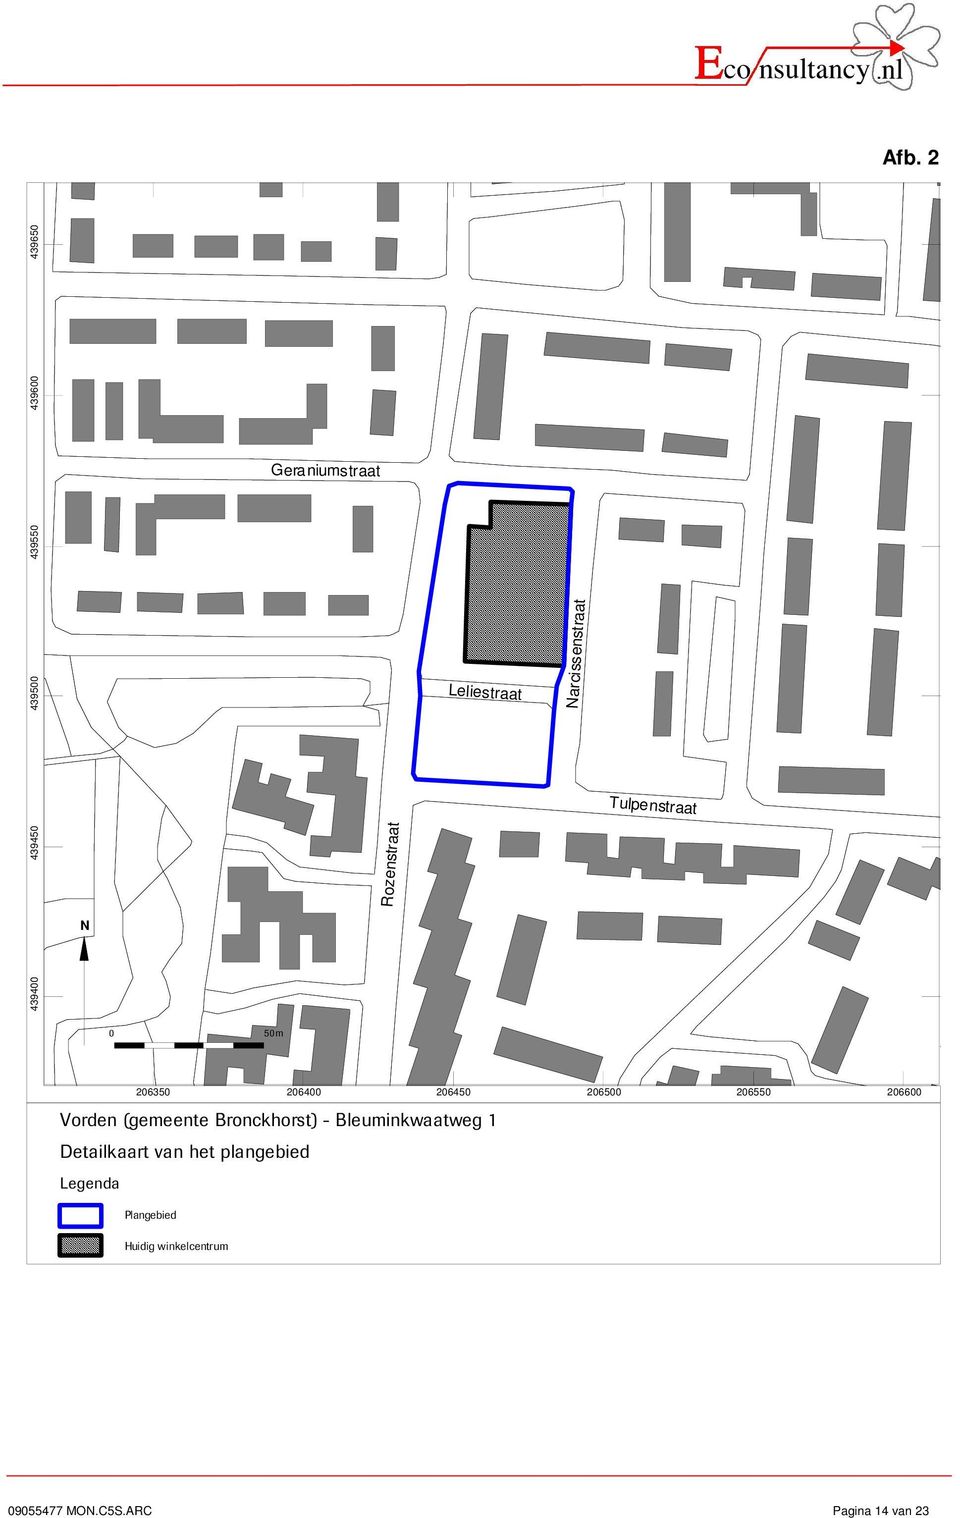 206600 Vorden (gemeente Bronckhorst) - Bleuminkwaatweg 1 Detailkaart van het